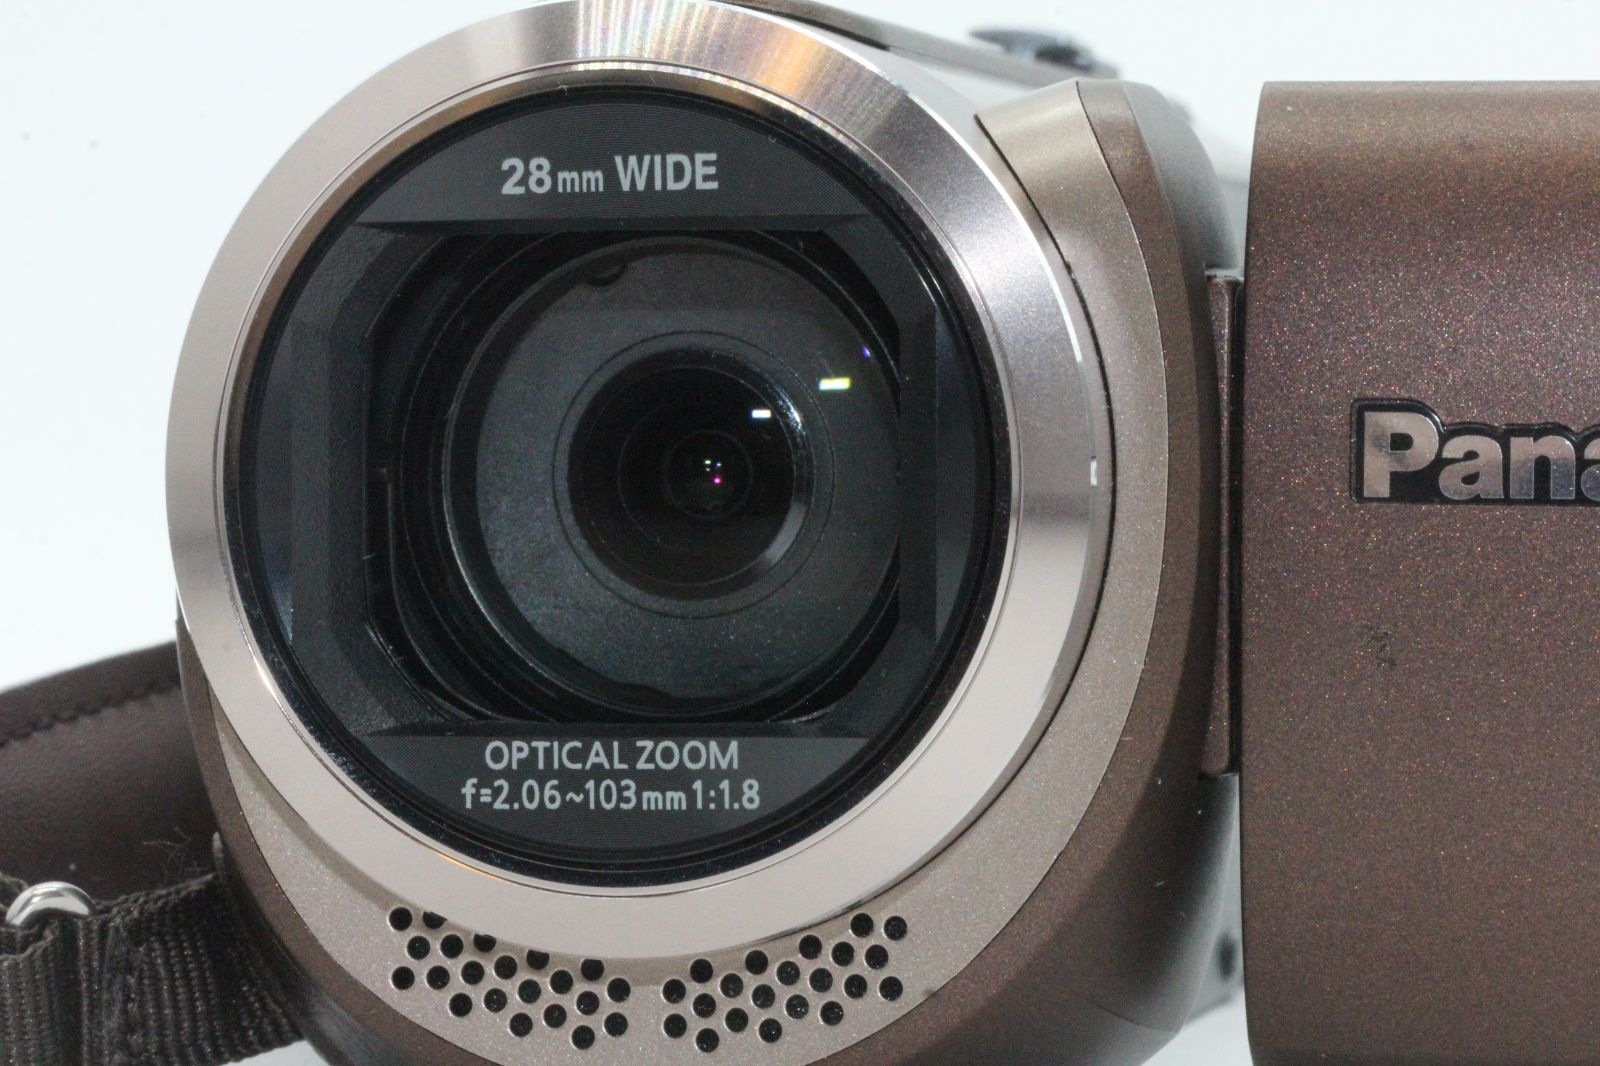 美品 パナソニック HDビデオカメラ W580M 32GB サブカメラ搭載 高倍率